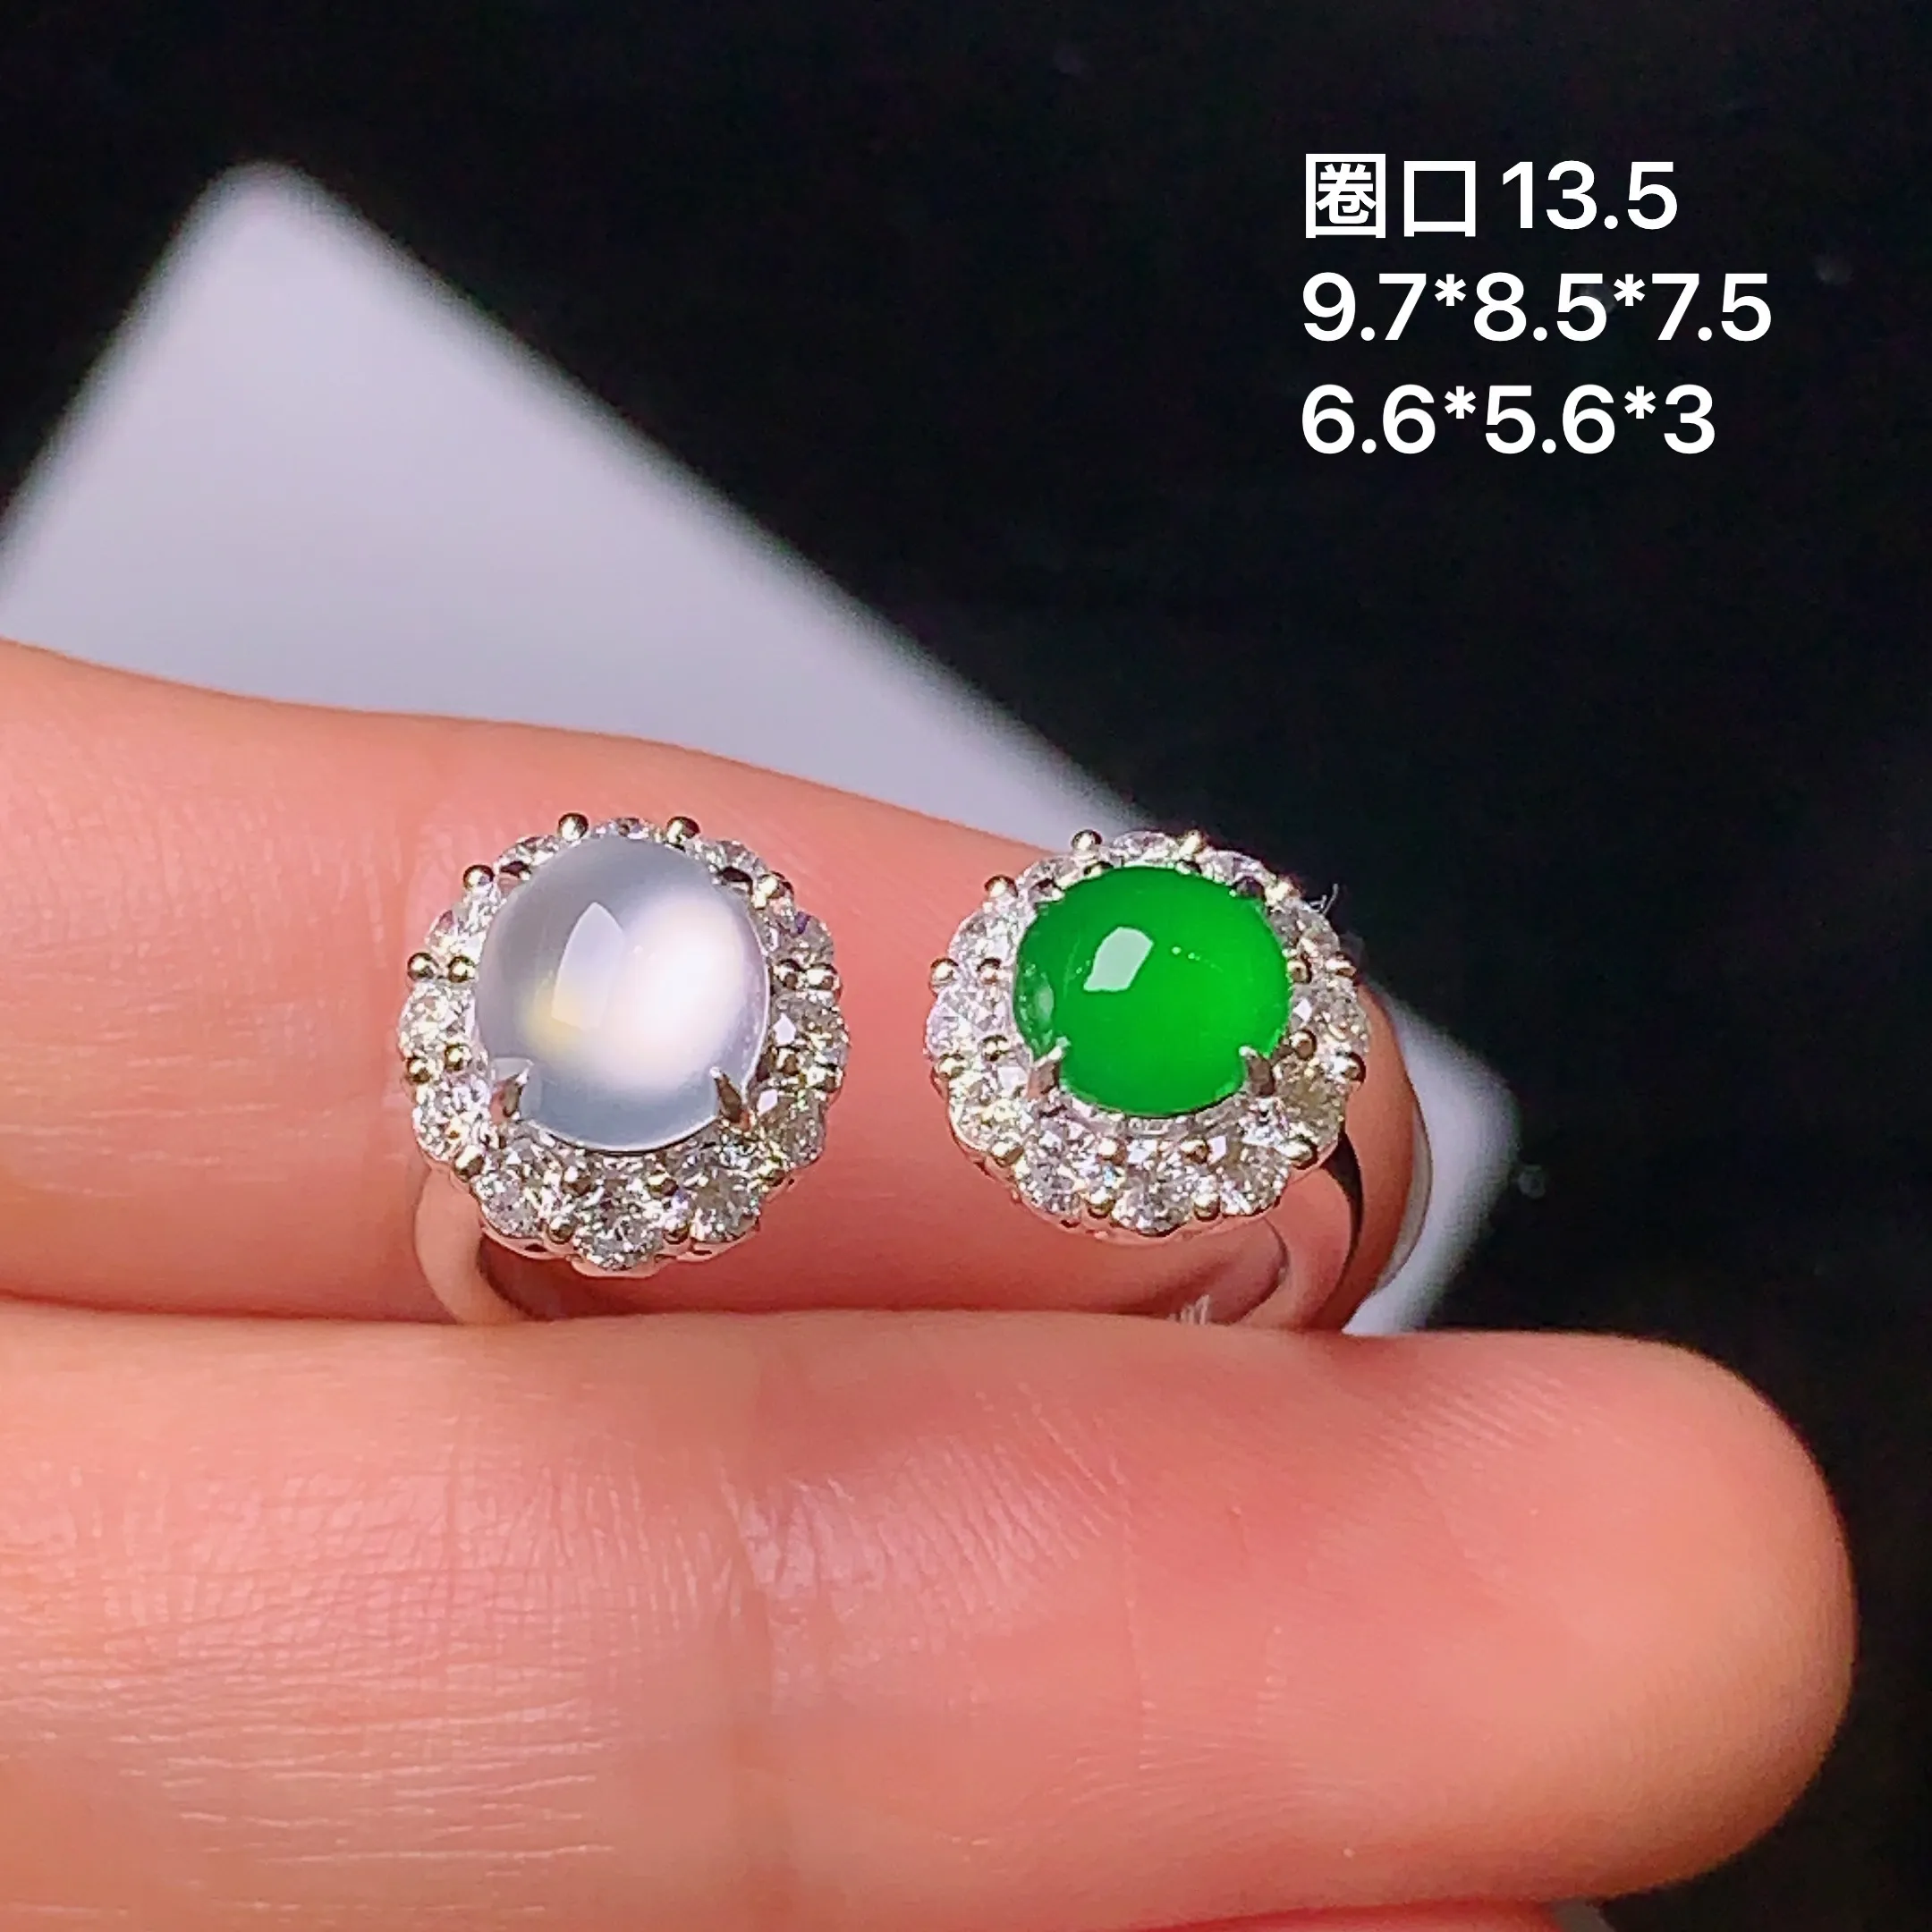 18k金钻镶嵌满绿蛋面组合戒指 玉质细腻 色泽艳丽 款式新颖 圈口13.5 整体尺寸9.7*8.5*7.5